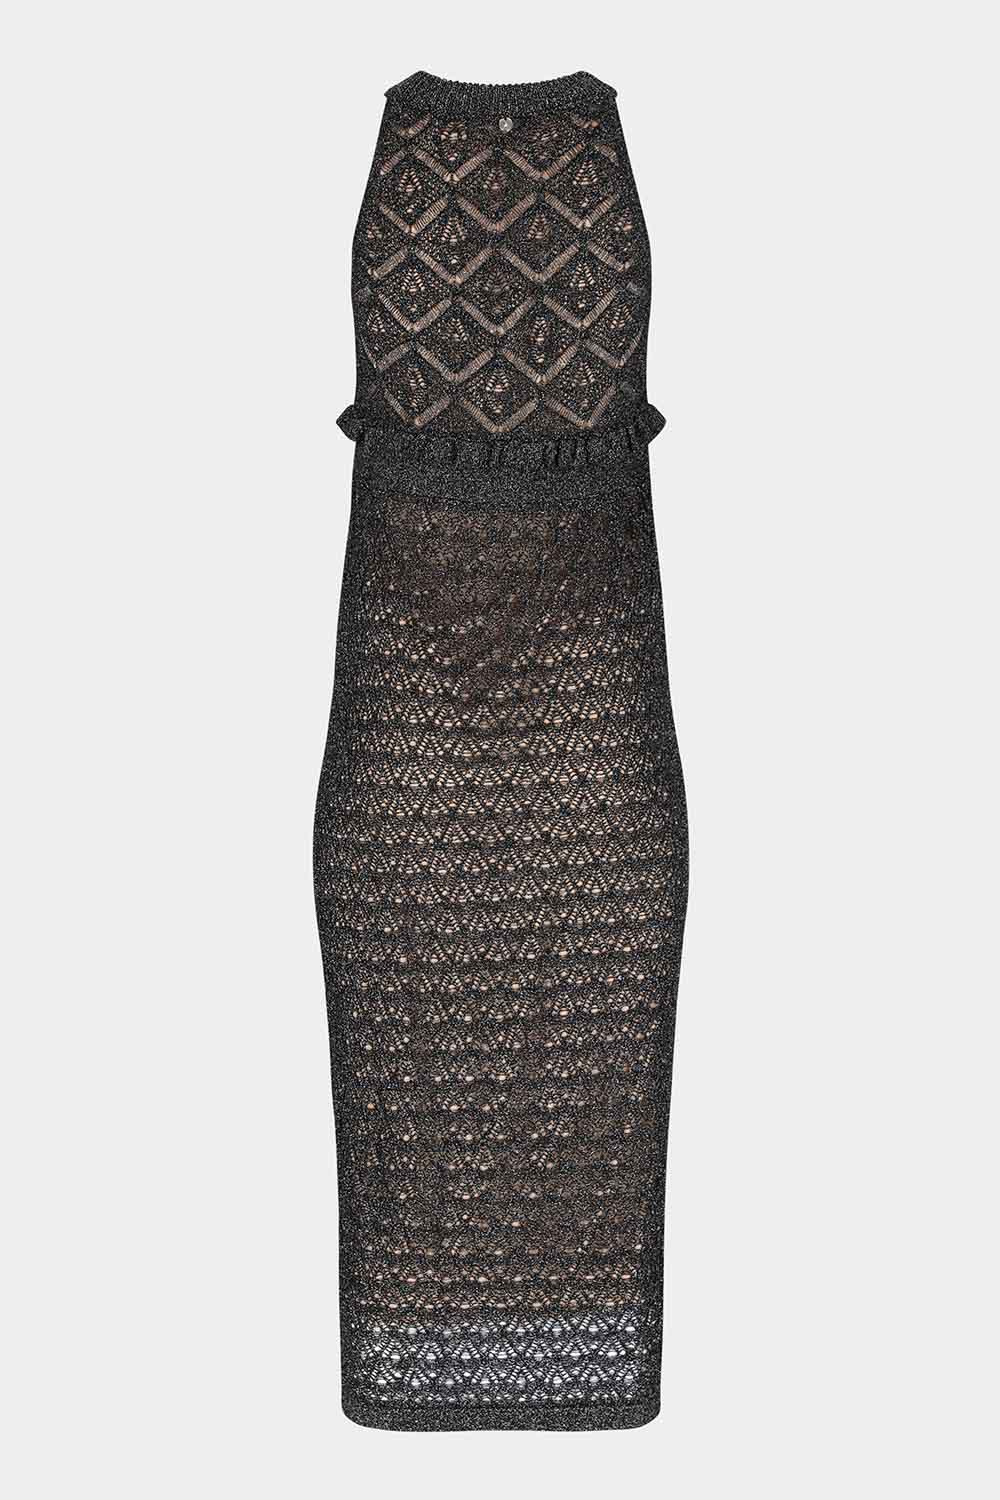 שמלת תחרה לנשים מעוינים LIU JO Vendome online | ונדום .